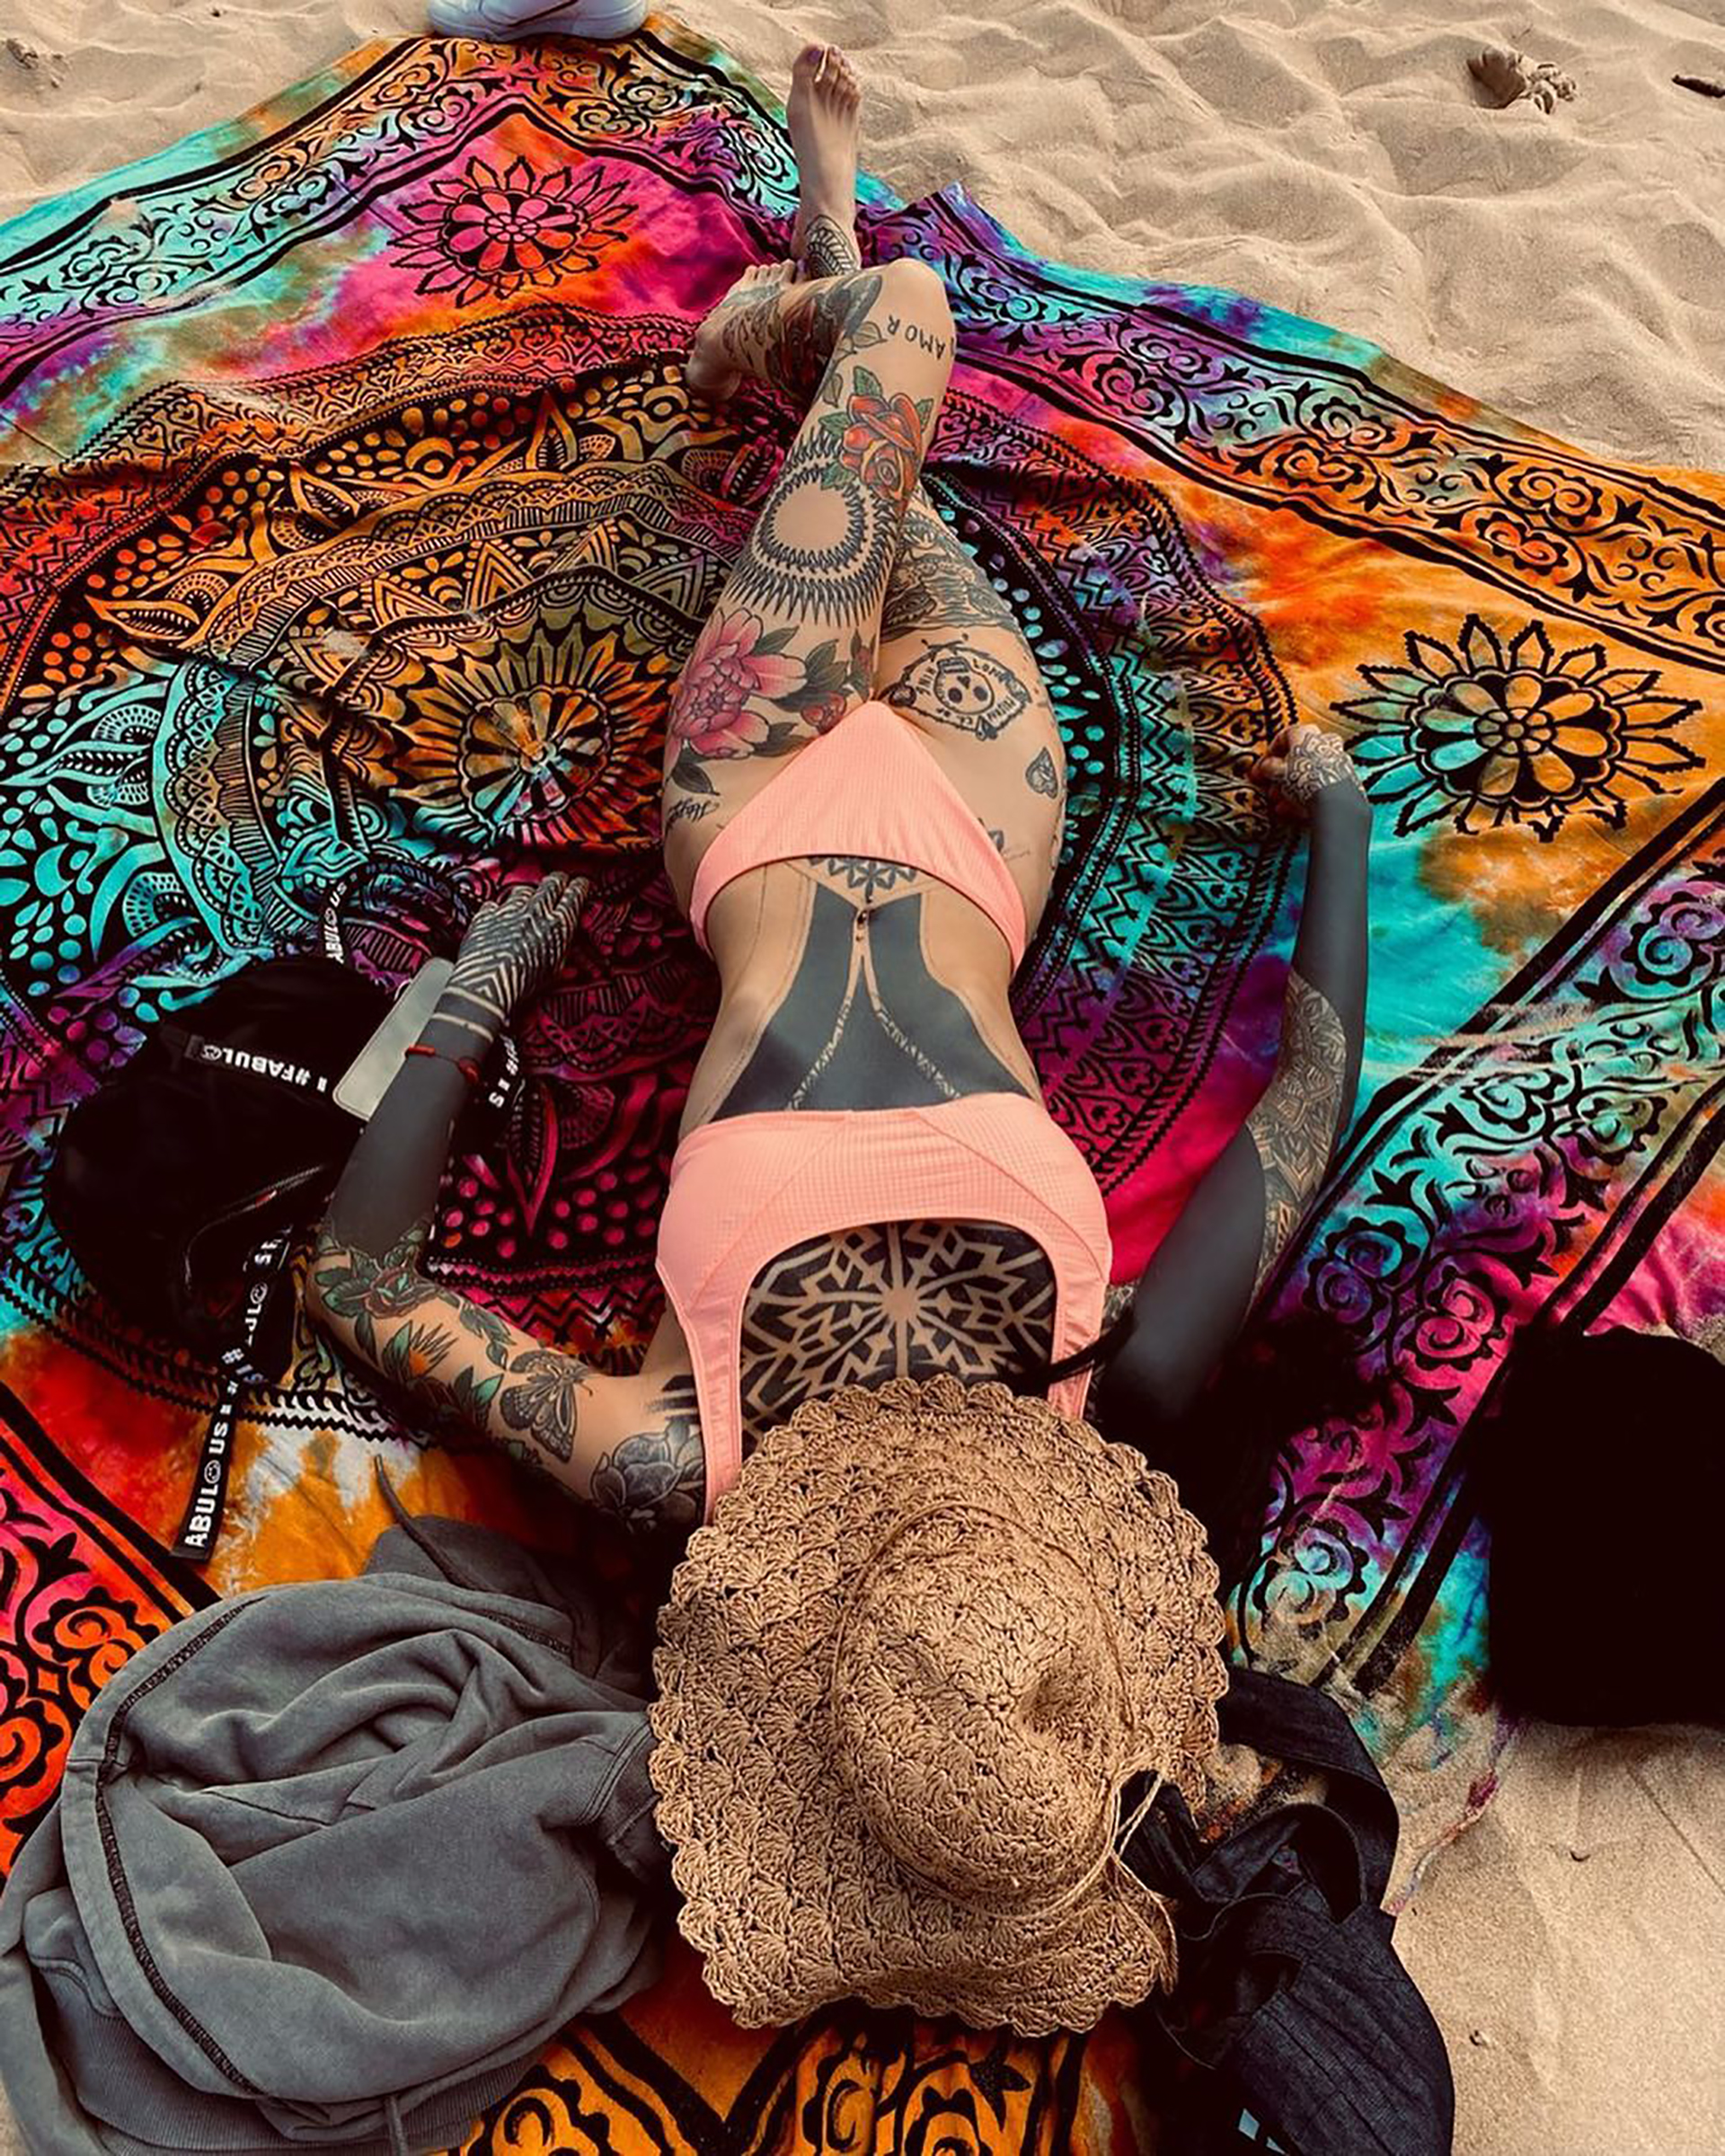 "El poder del camuflado", bromeó Cande Tinelli al comparar sus tatuajes con el diseño del pareo sobre el cual descansa (Foto: Instagram)